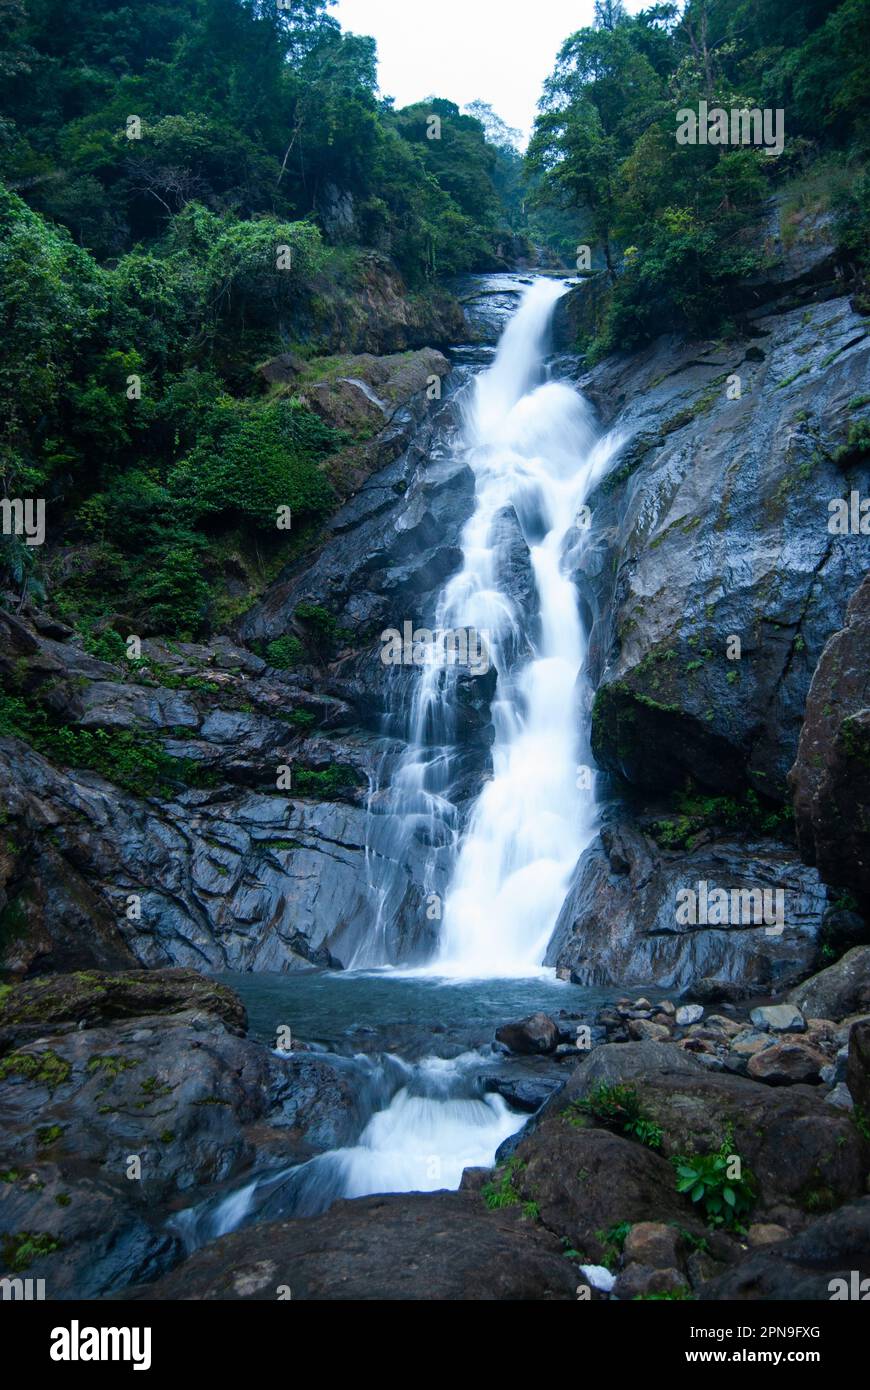 Siruvani waterfalls Coimbatore Western Ghats Stock Photo